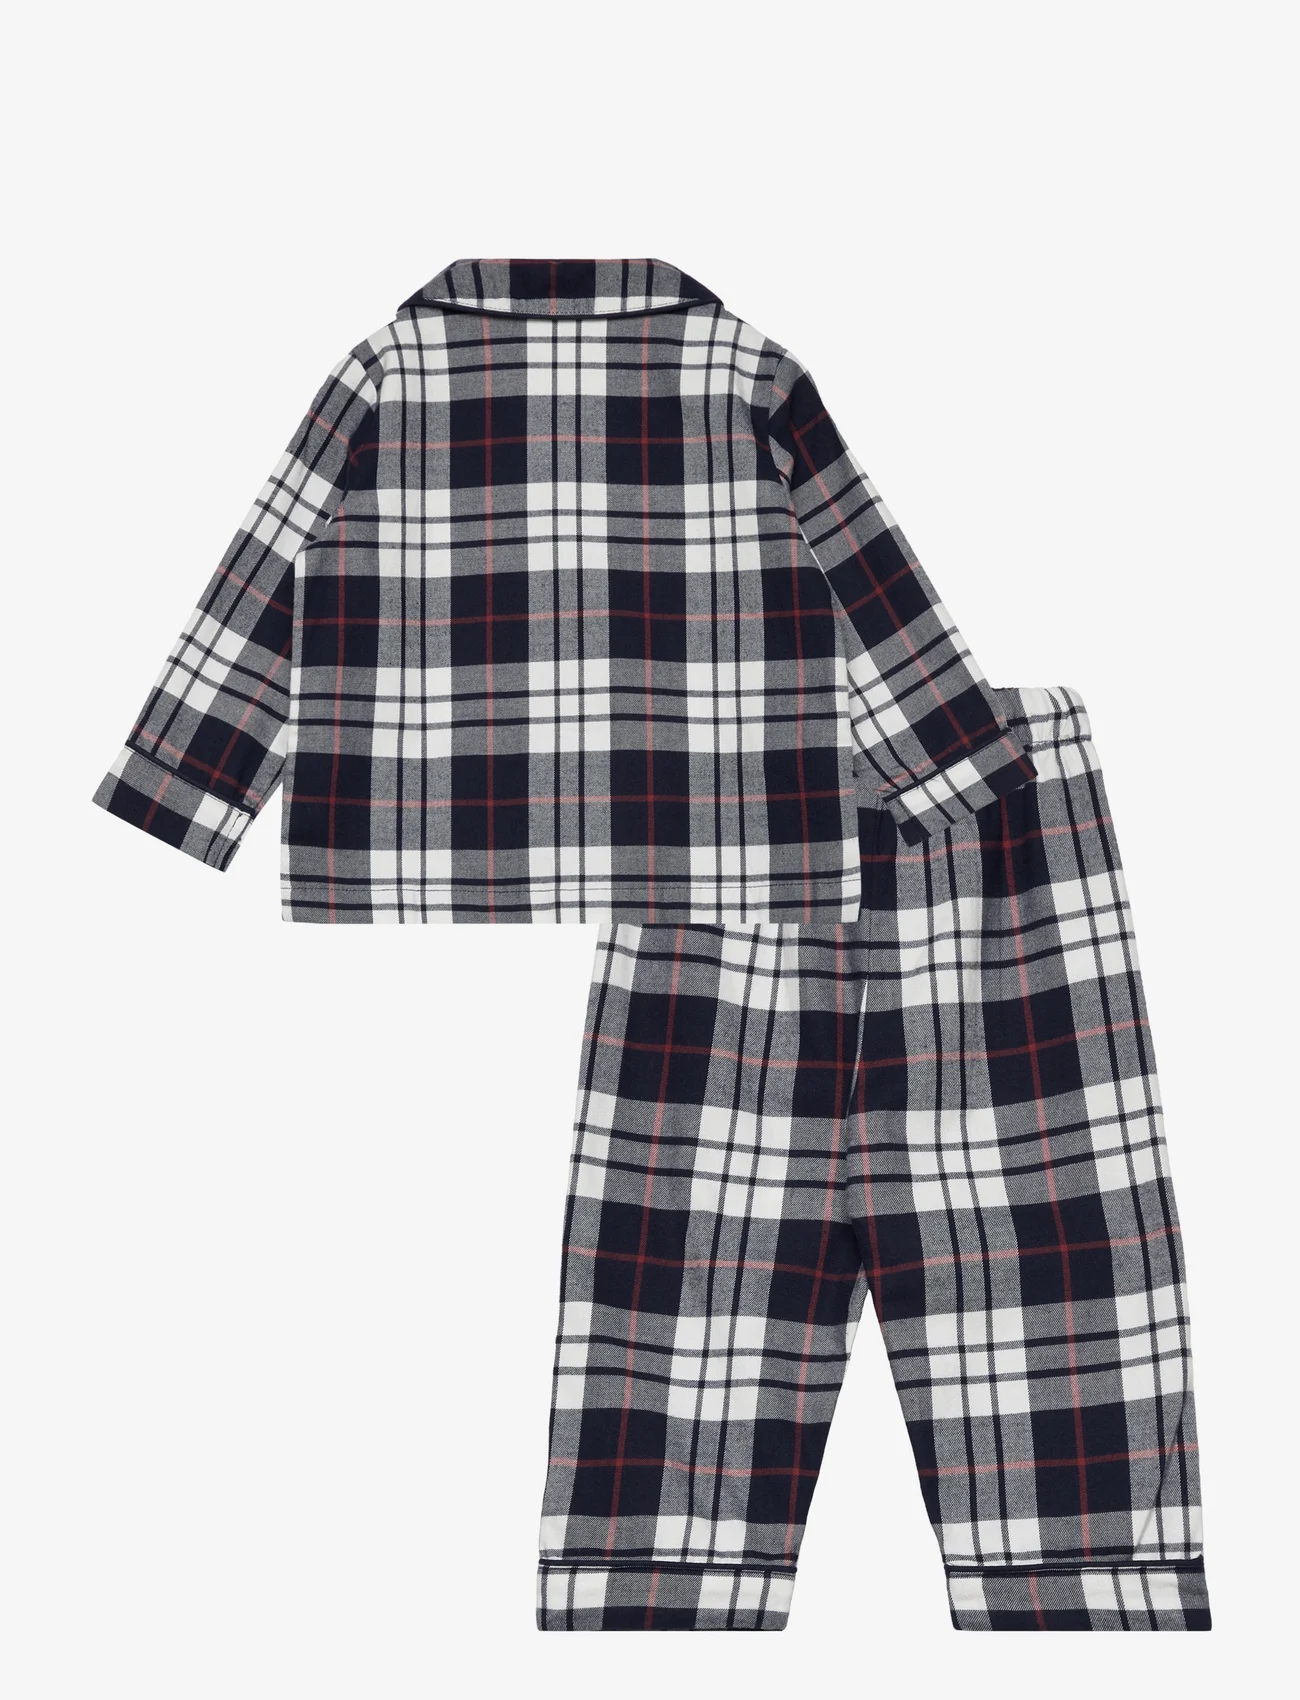 Mango - Two-pieces check long pyjamas - pyjamassæt - navy - 1